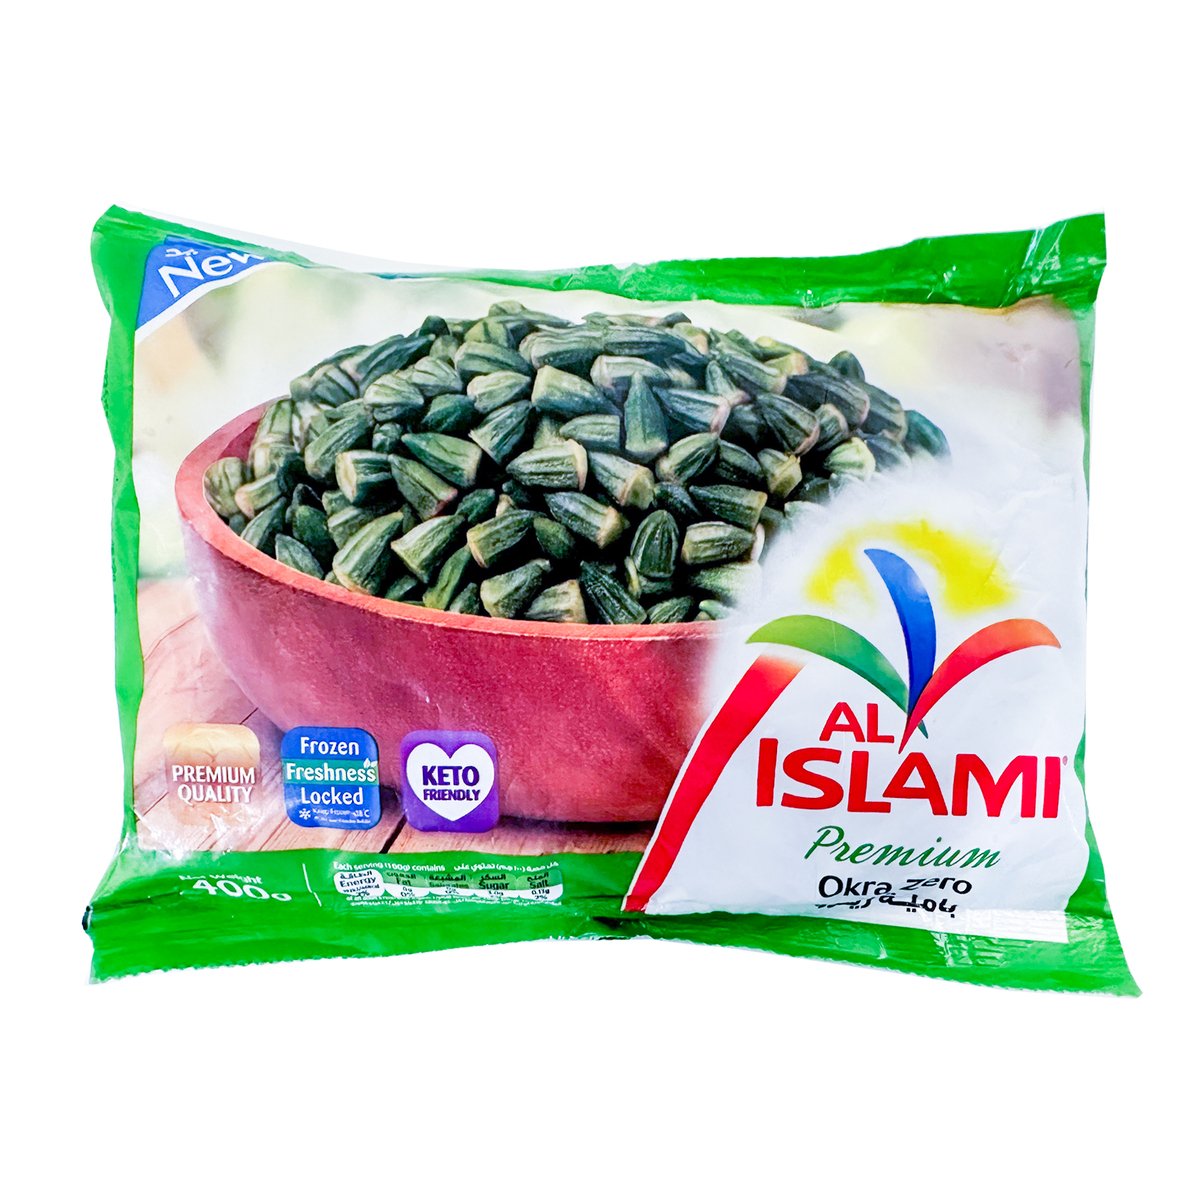 Al Islami Premium Okra Zero 400 g